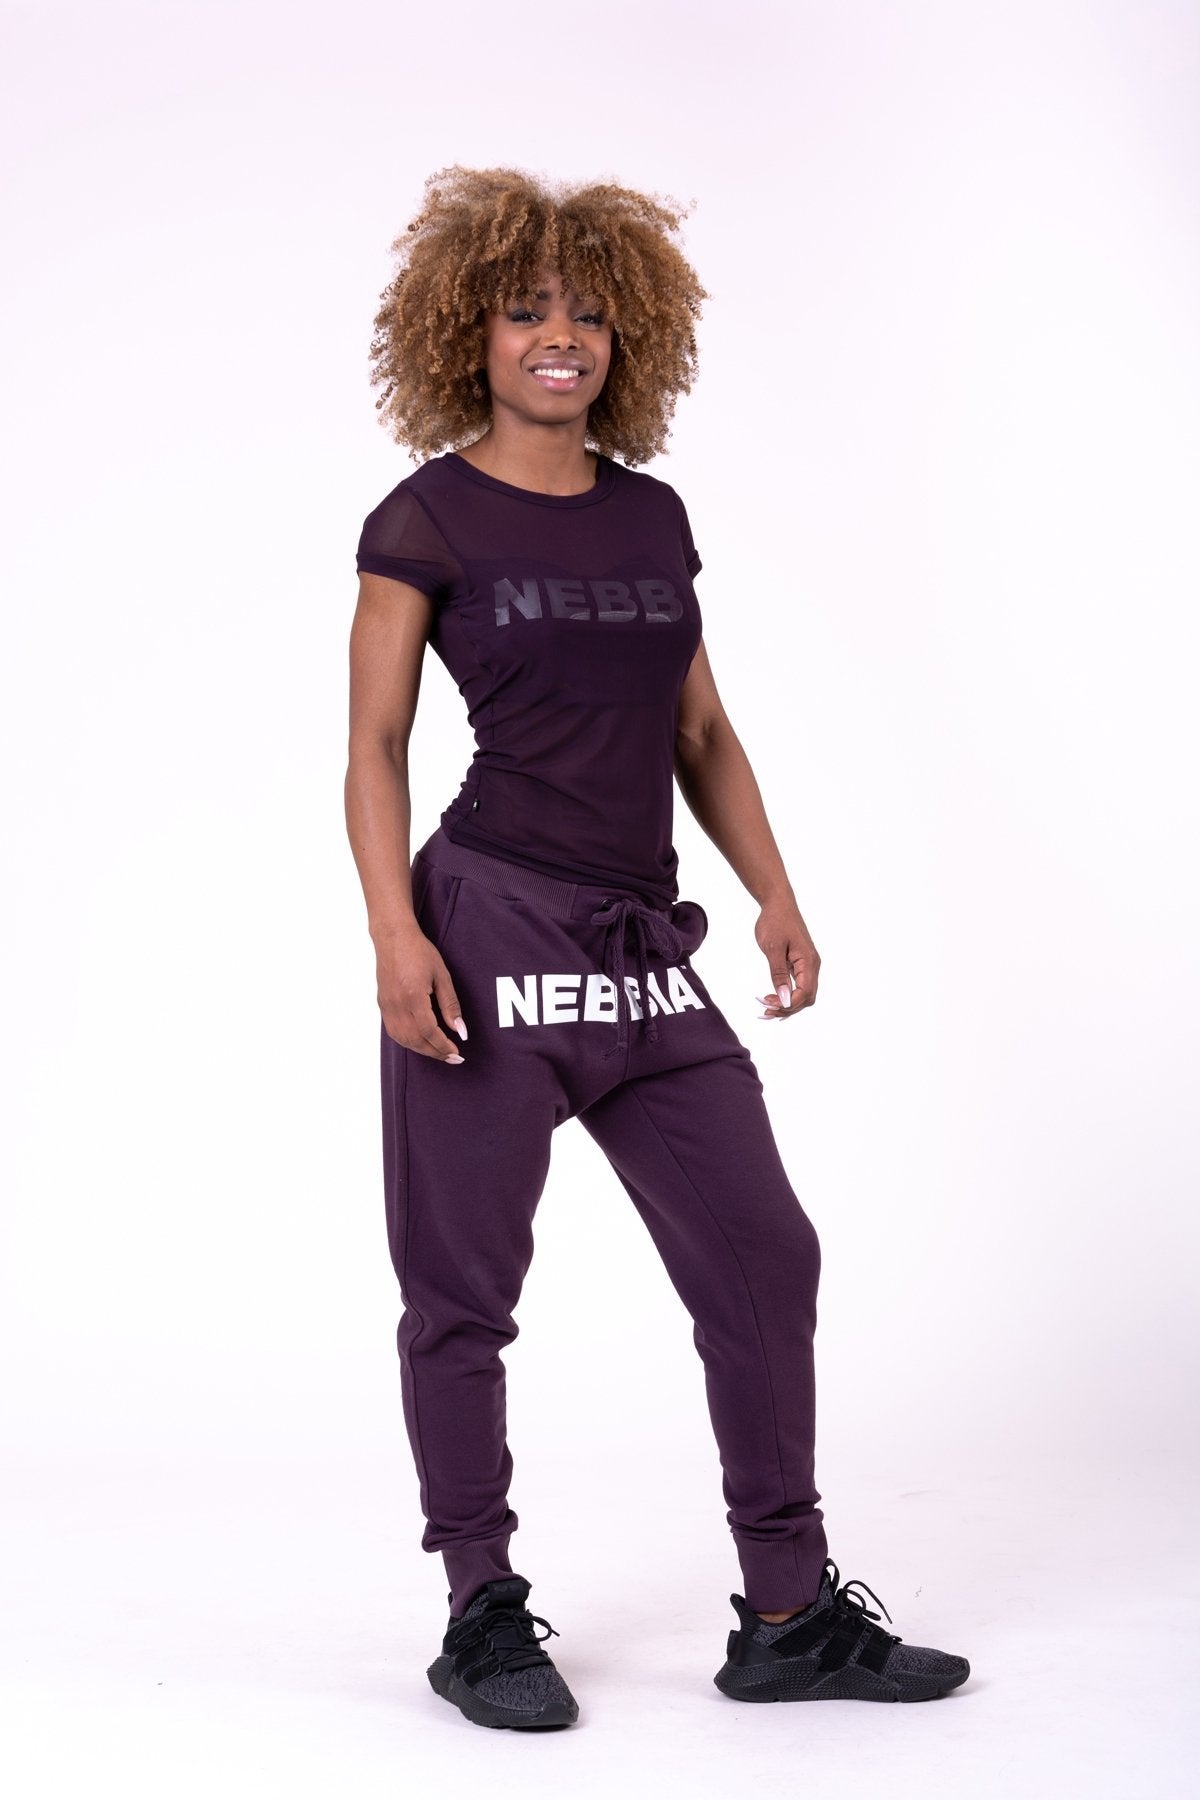 Nebbia Flash-Mesh T-Shirt 665 - Burgundy - Urban Gym Wear